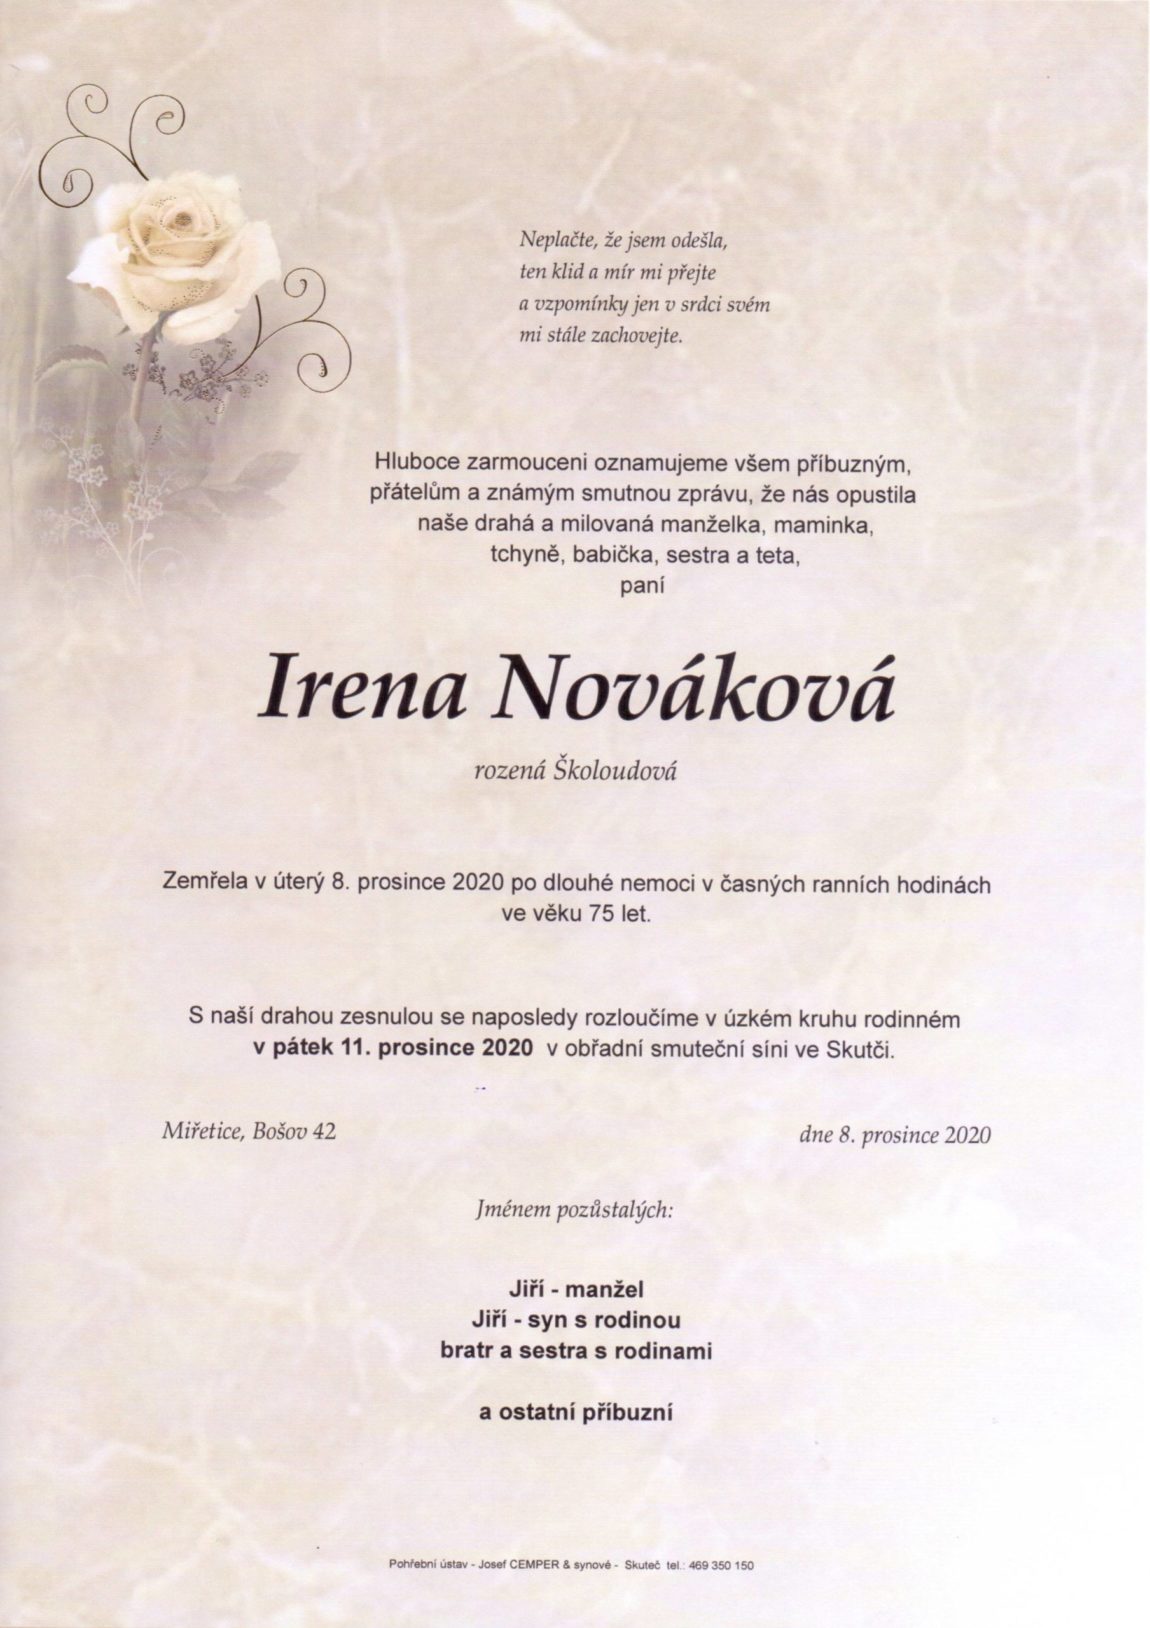 Irena-Novakova-8.12.-2020-scaled.jpg